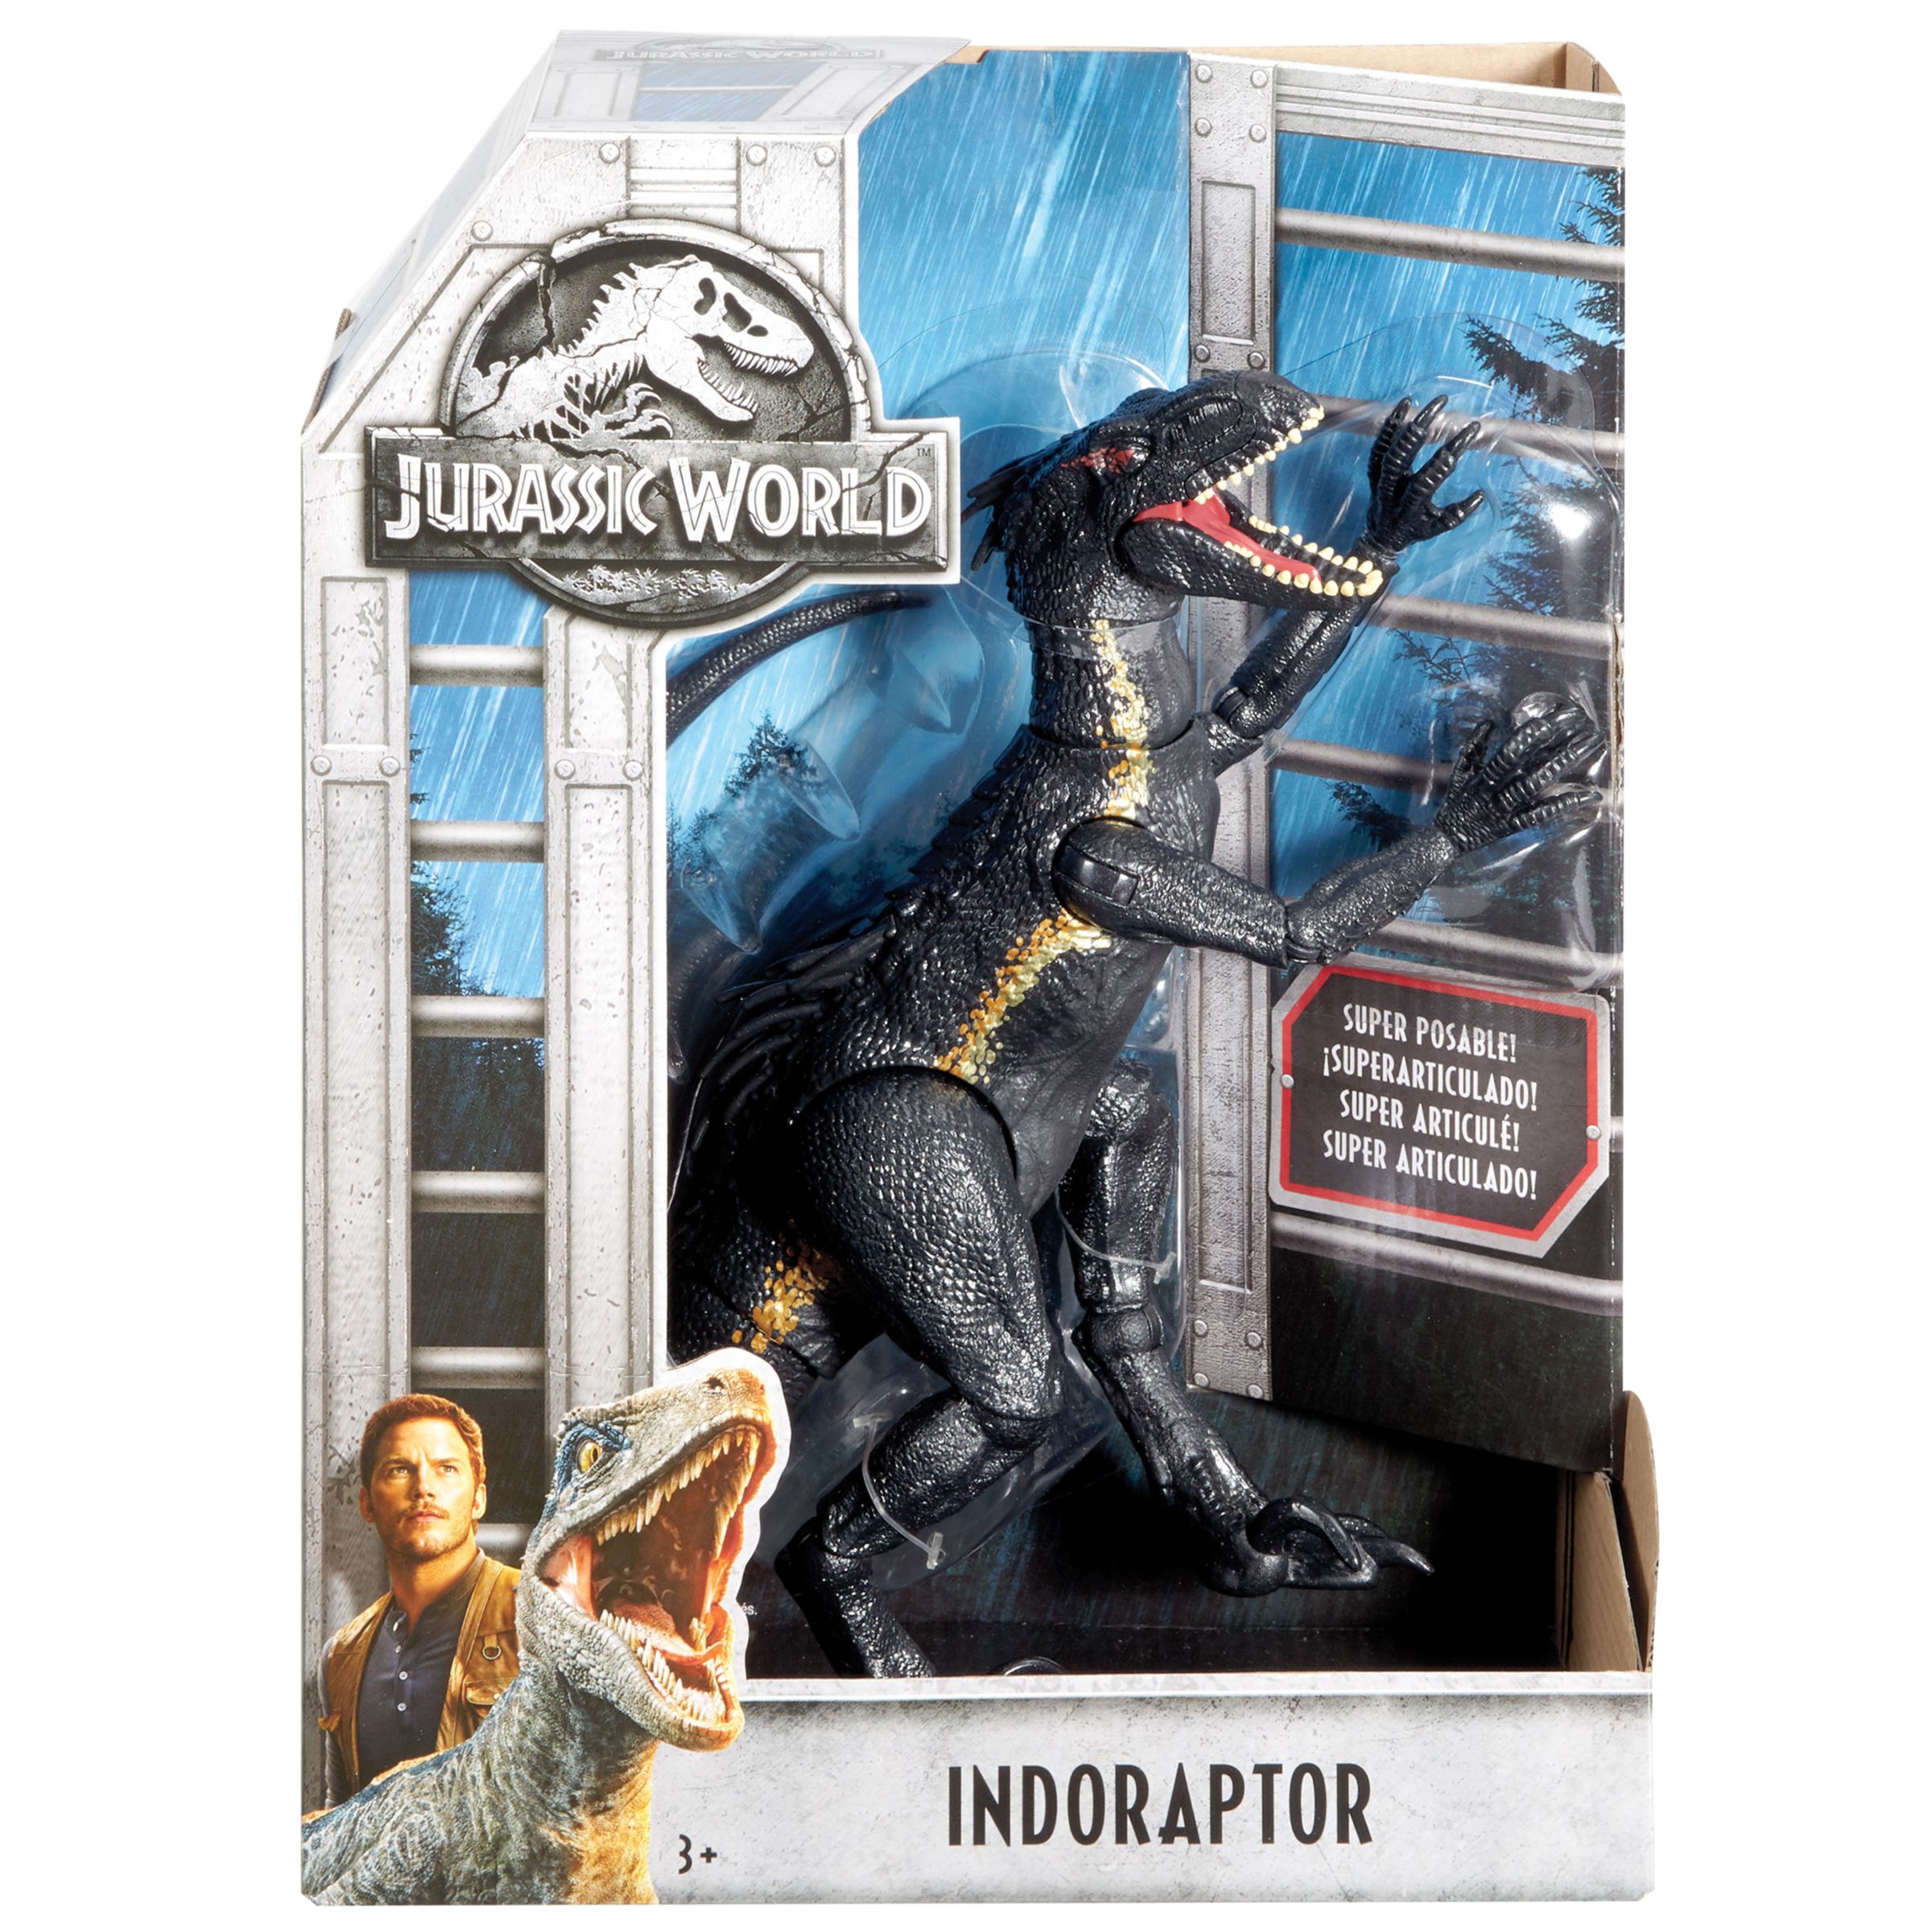 Jurassic World Indoraptor Action Figure